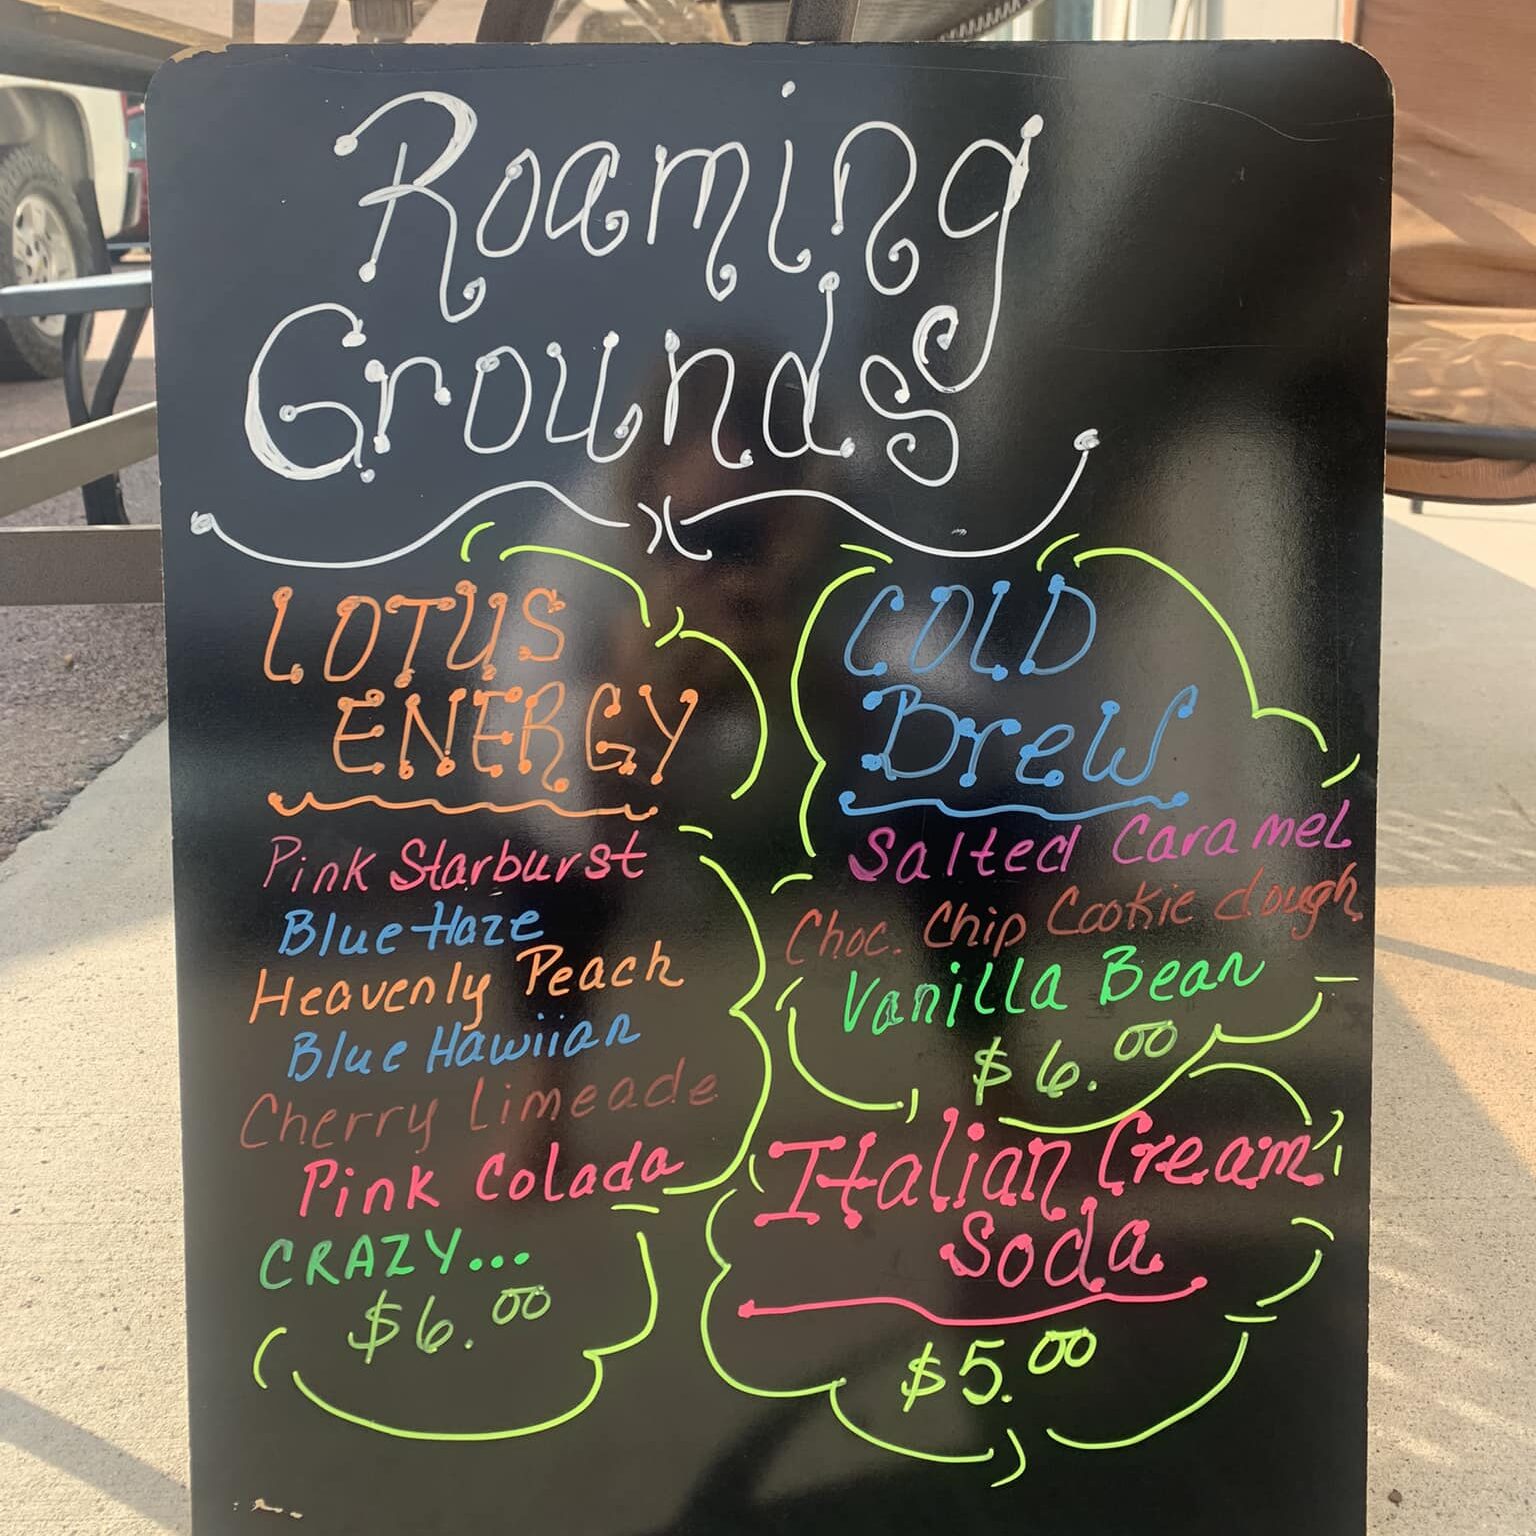 Roaming Grounds menu.